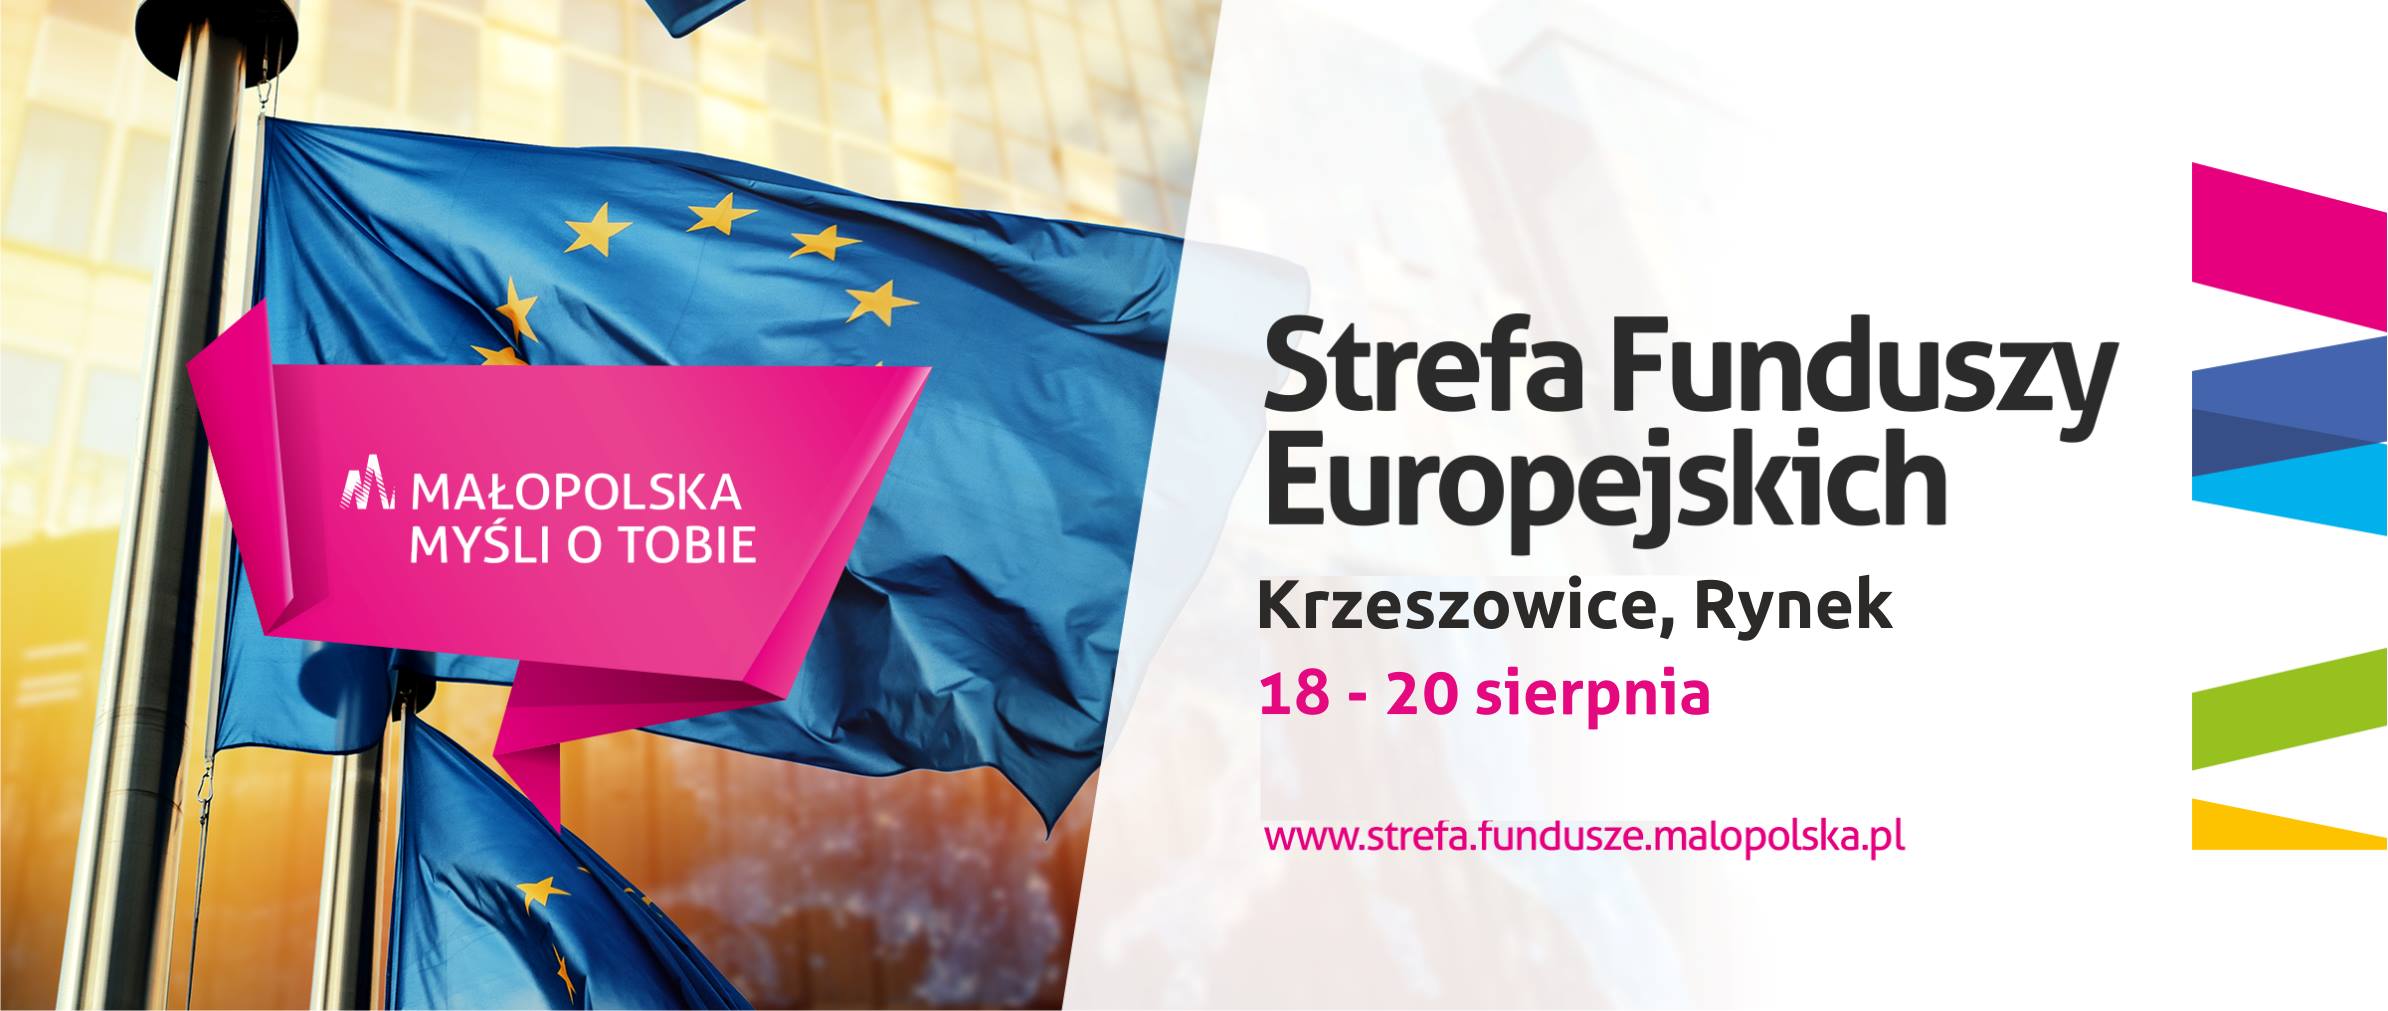 Strefa Funduszy Europejskich w Krzeszowicach - zaproszenie